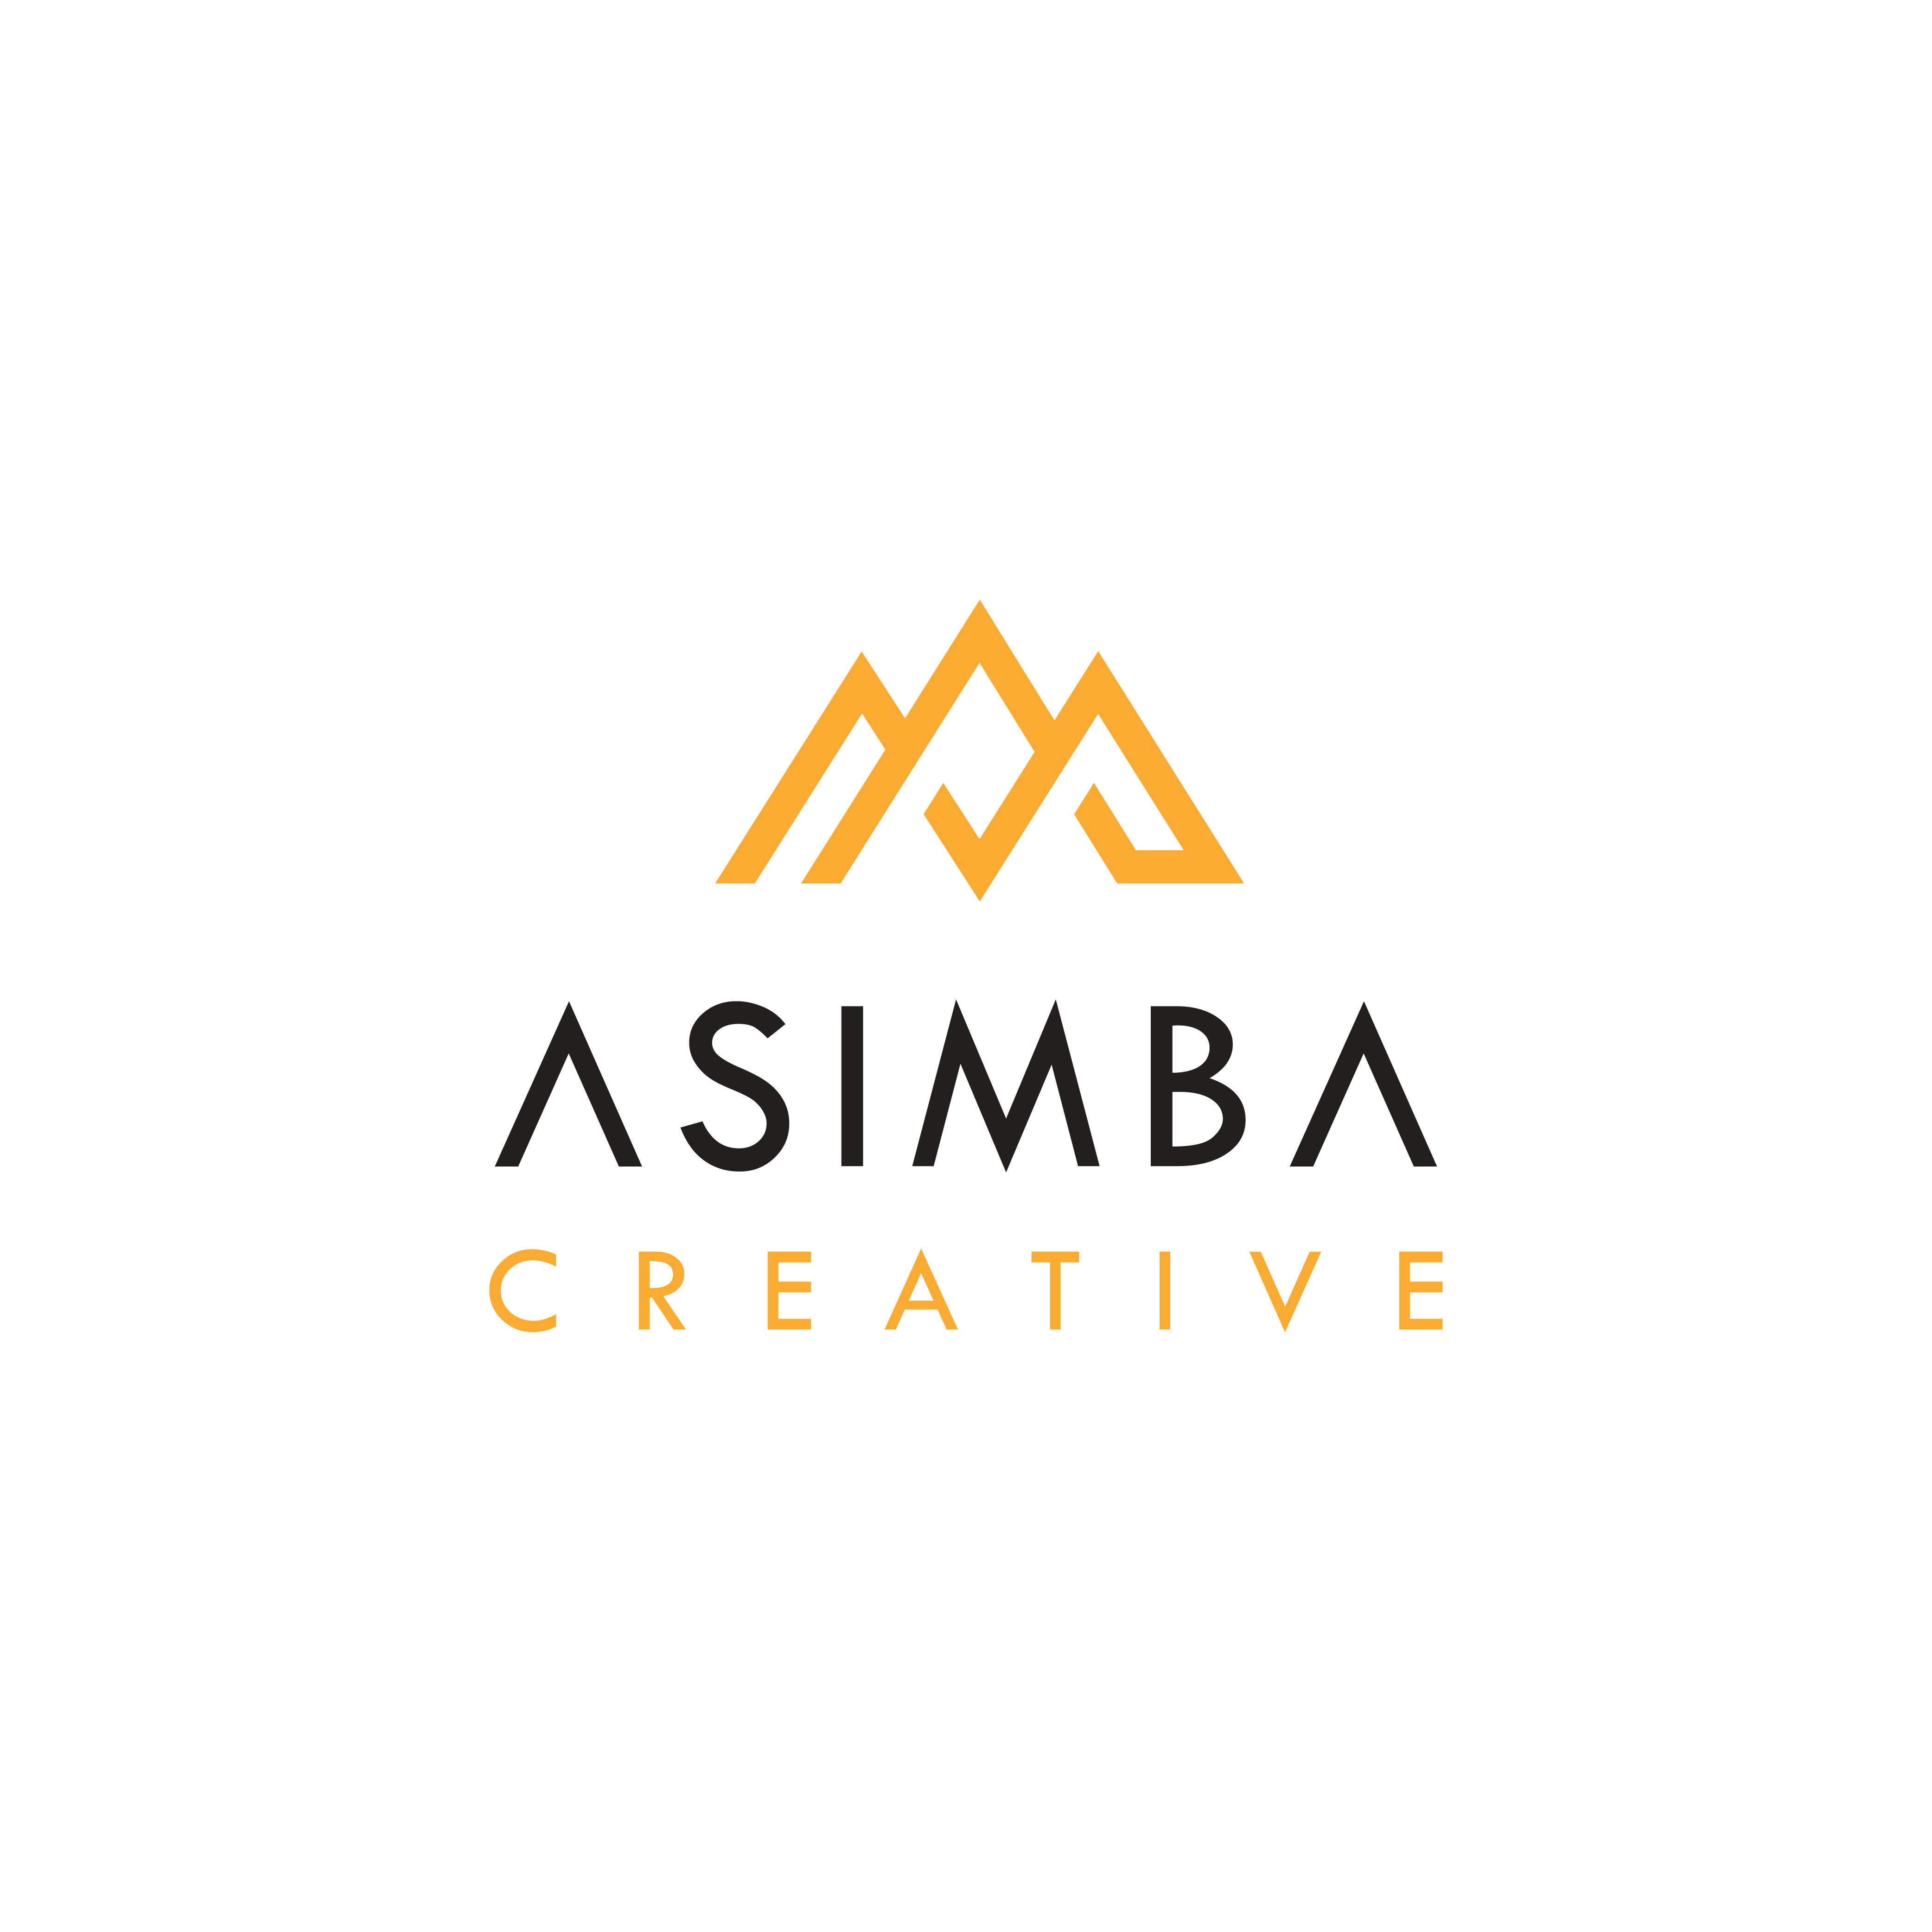 Asimba Creative